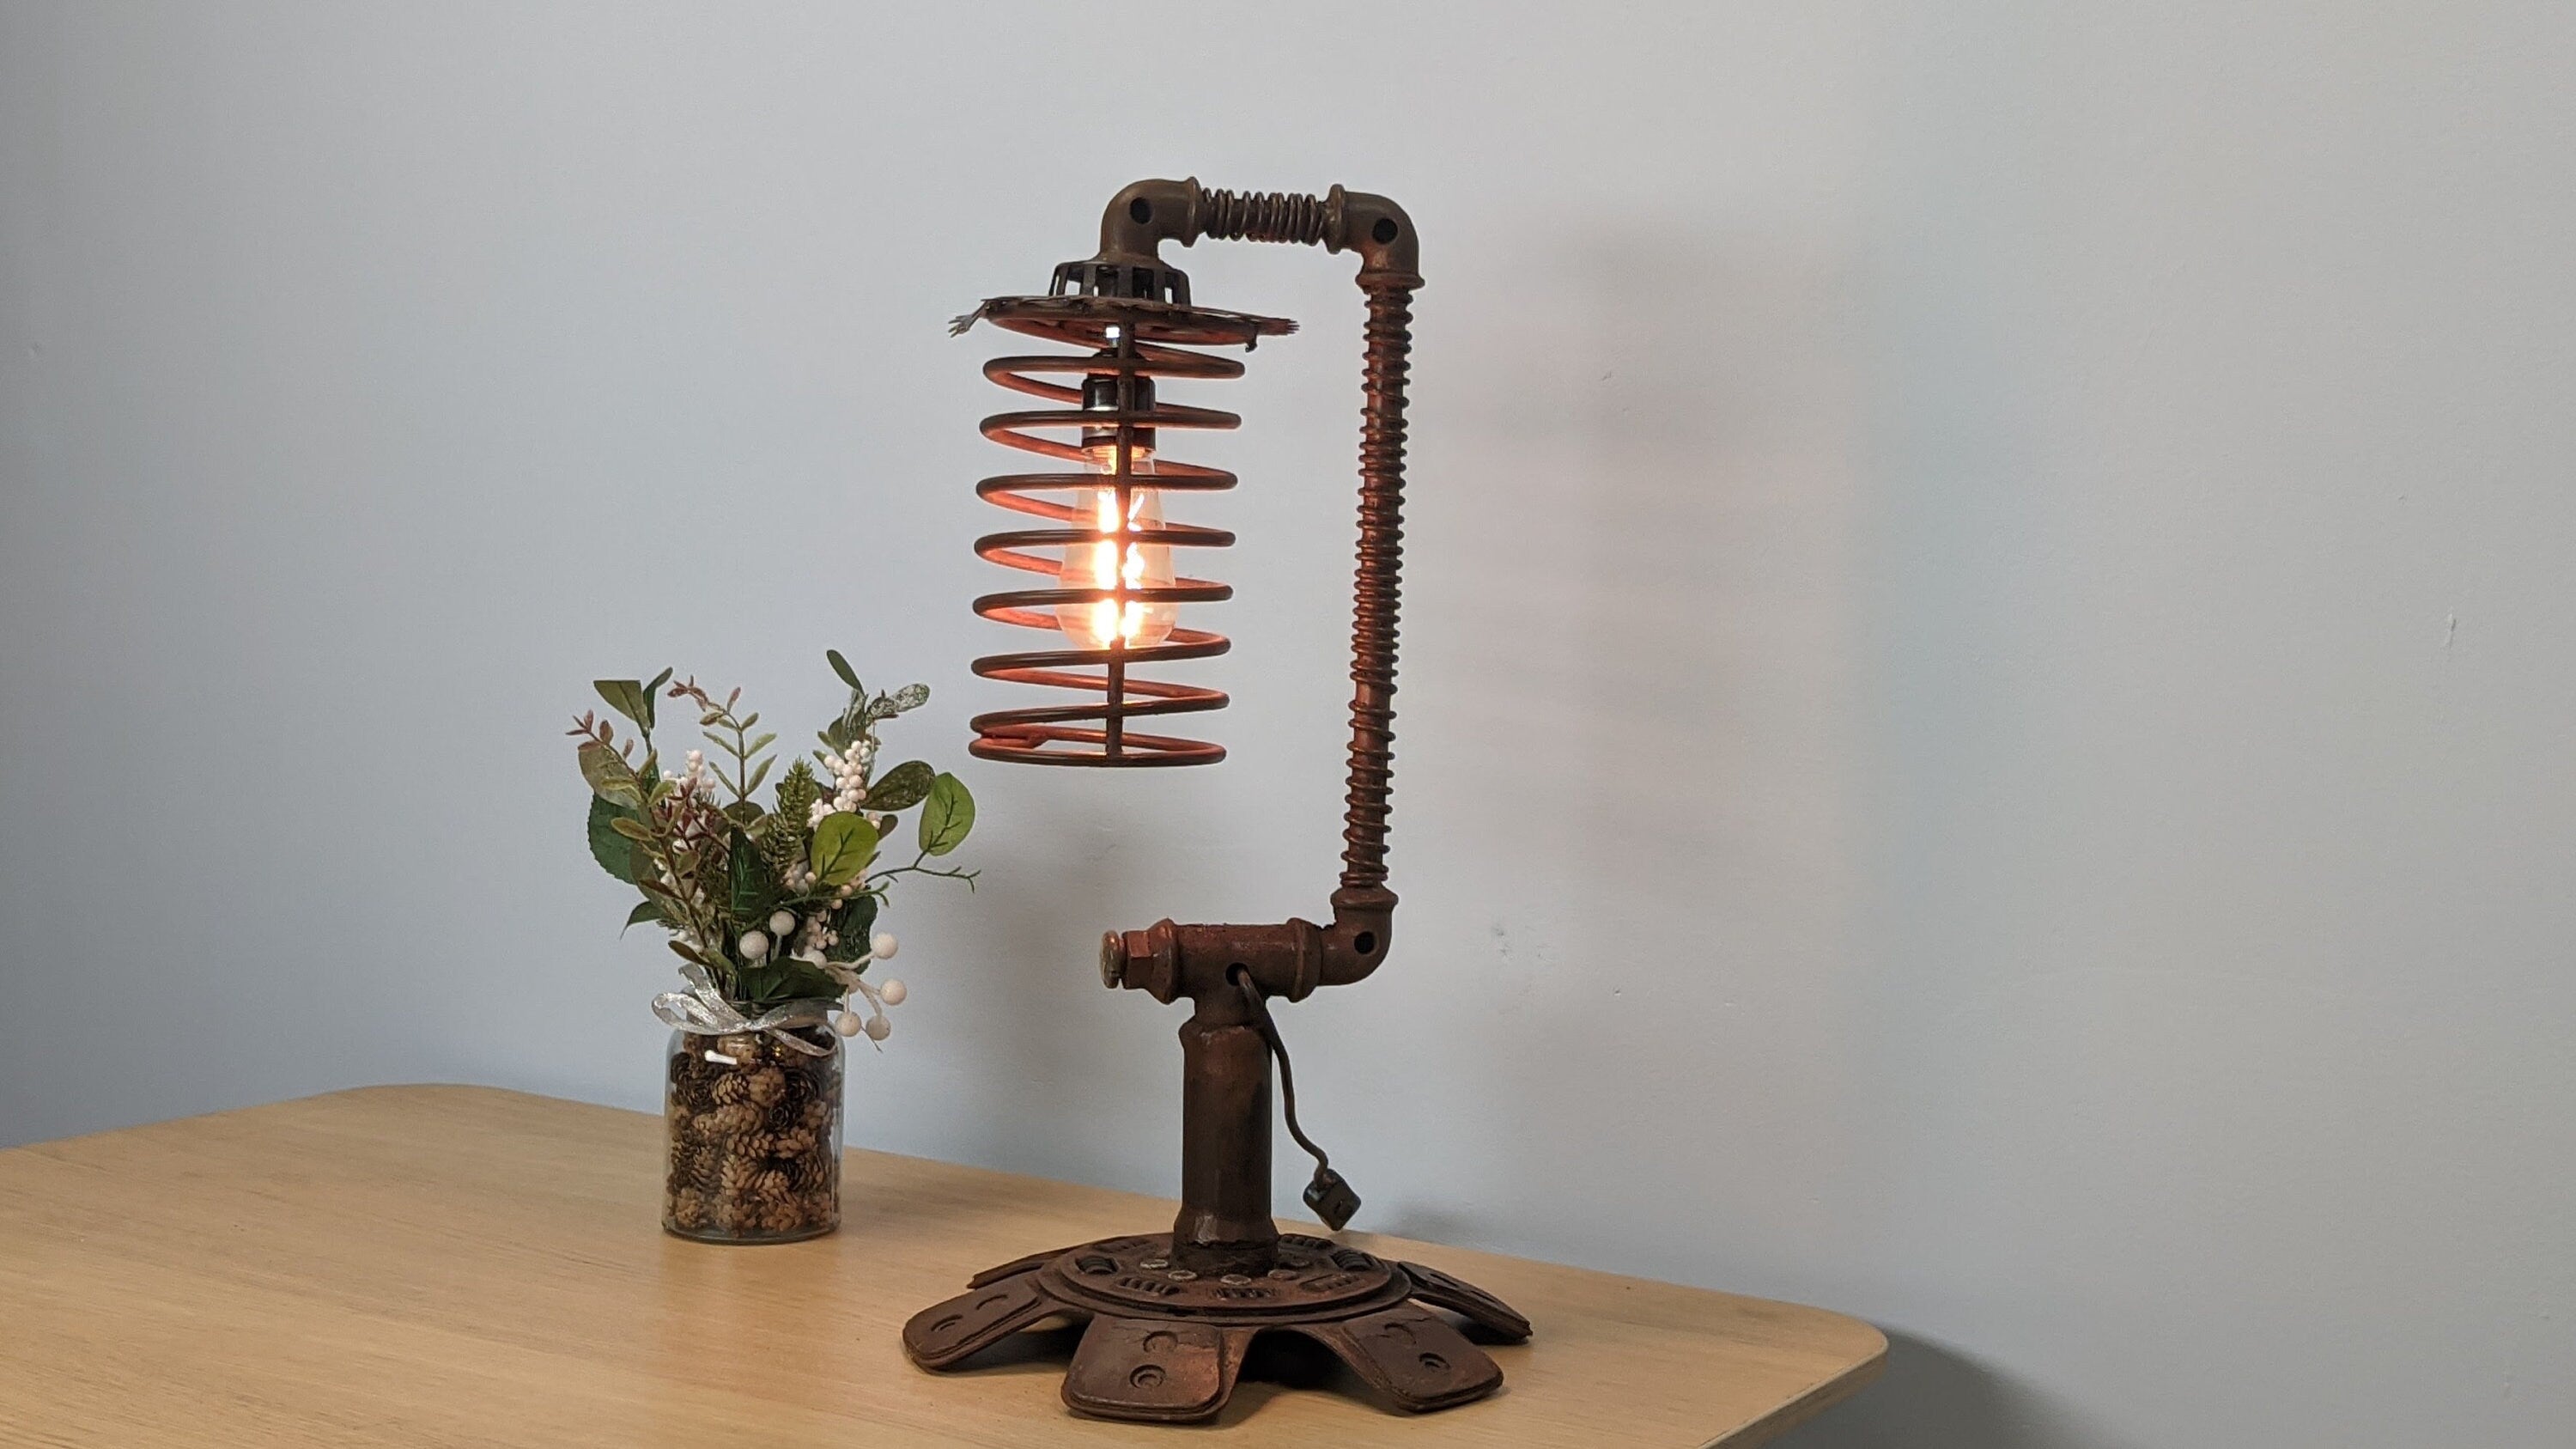 Versatile Side Table Lamp - Industrial Light for Modern Living